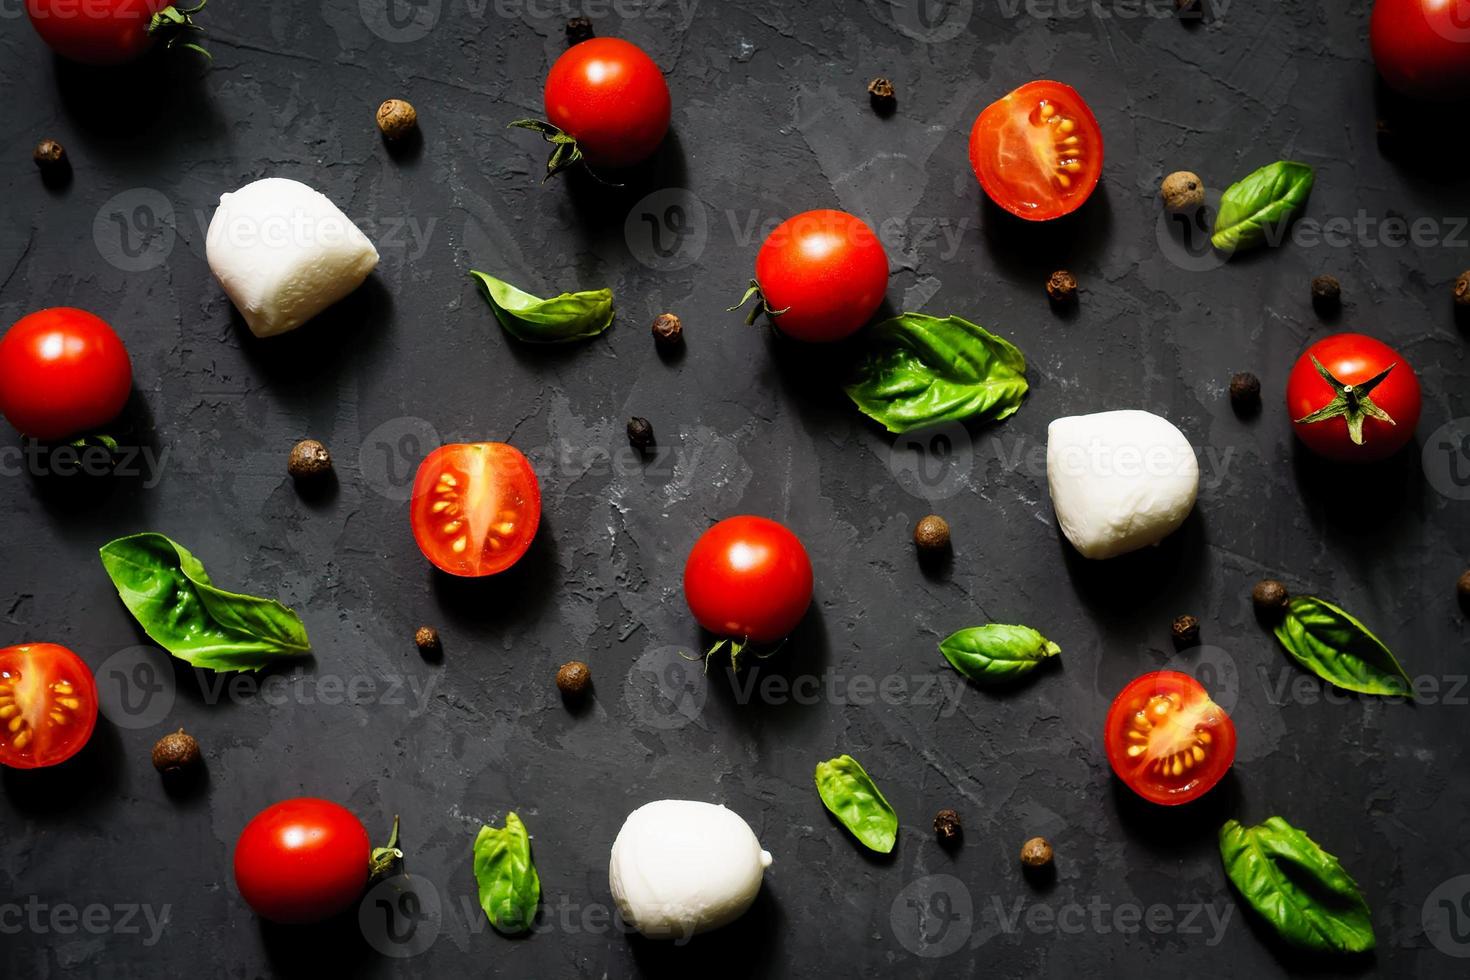 bolas de queijo mussarela com folhas de manjericão fresco e tomate cereja, ingredientes para salada caprese italiana, em um fundo preto. padrão de alimentação foto